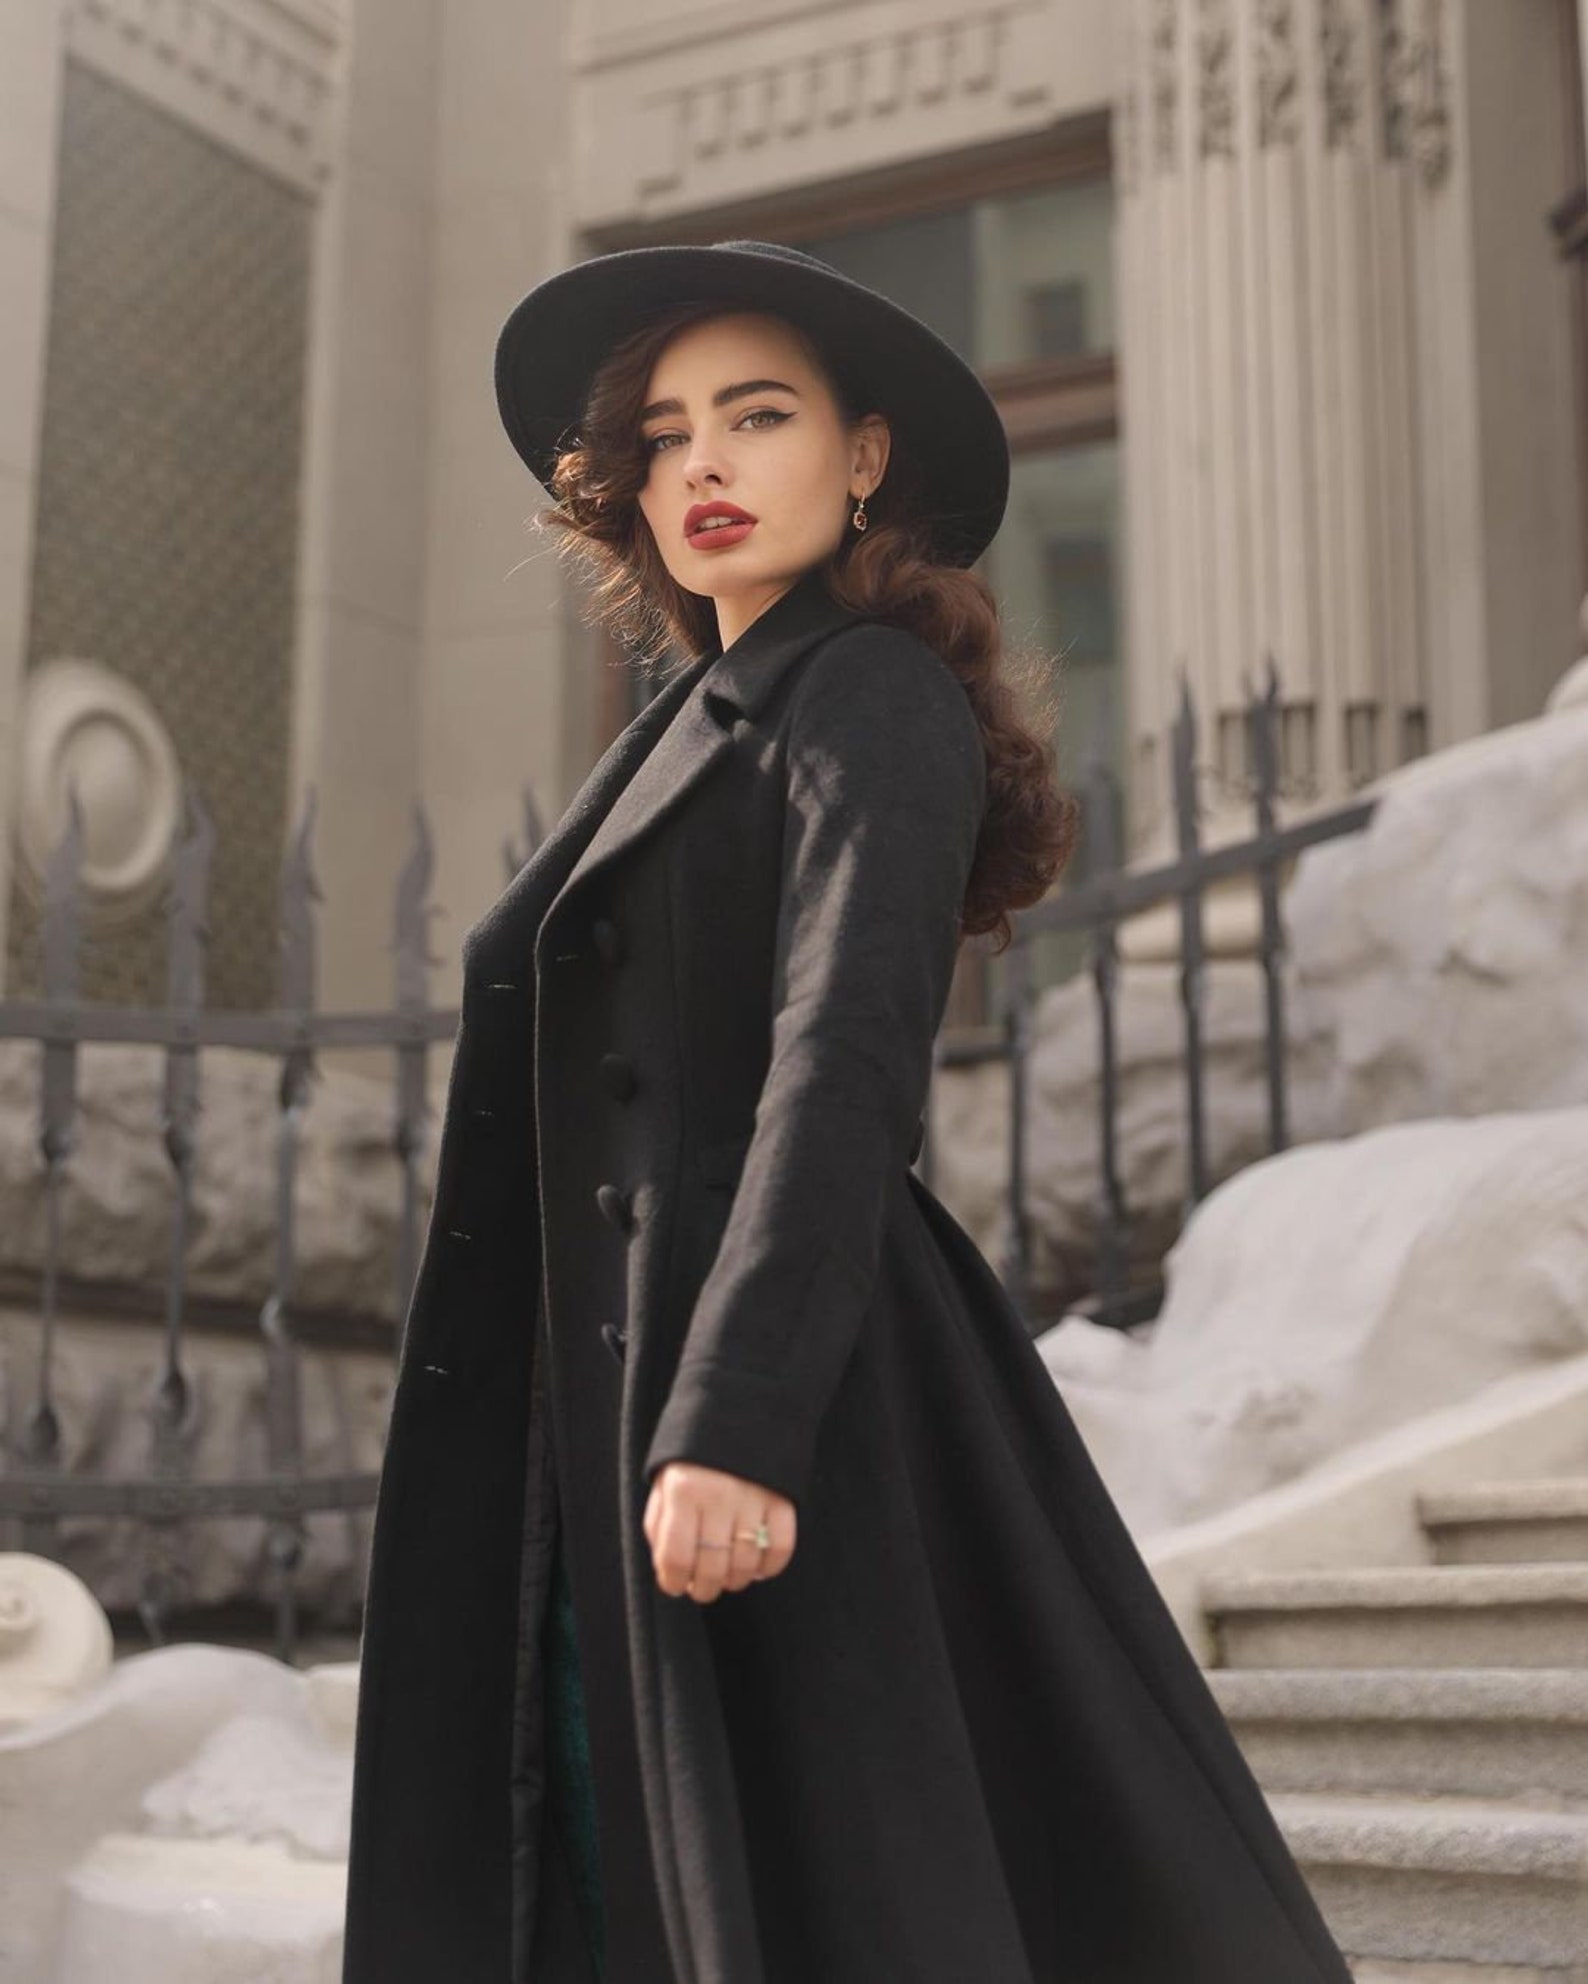 Vintage Inspired Long Wool Coat in Black Winter Fall Wool | Etsy